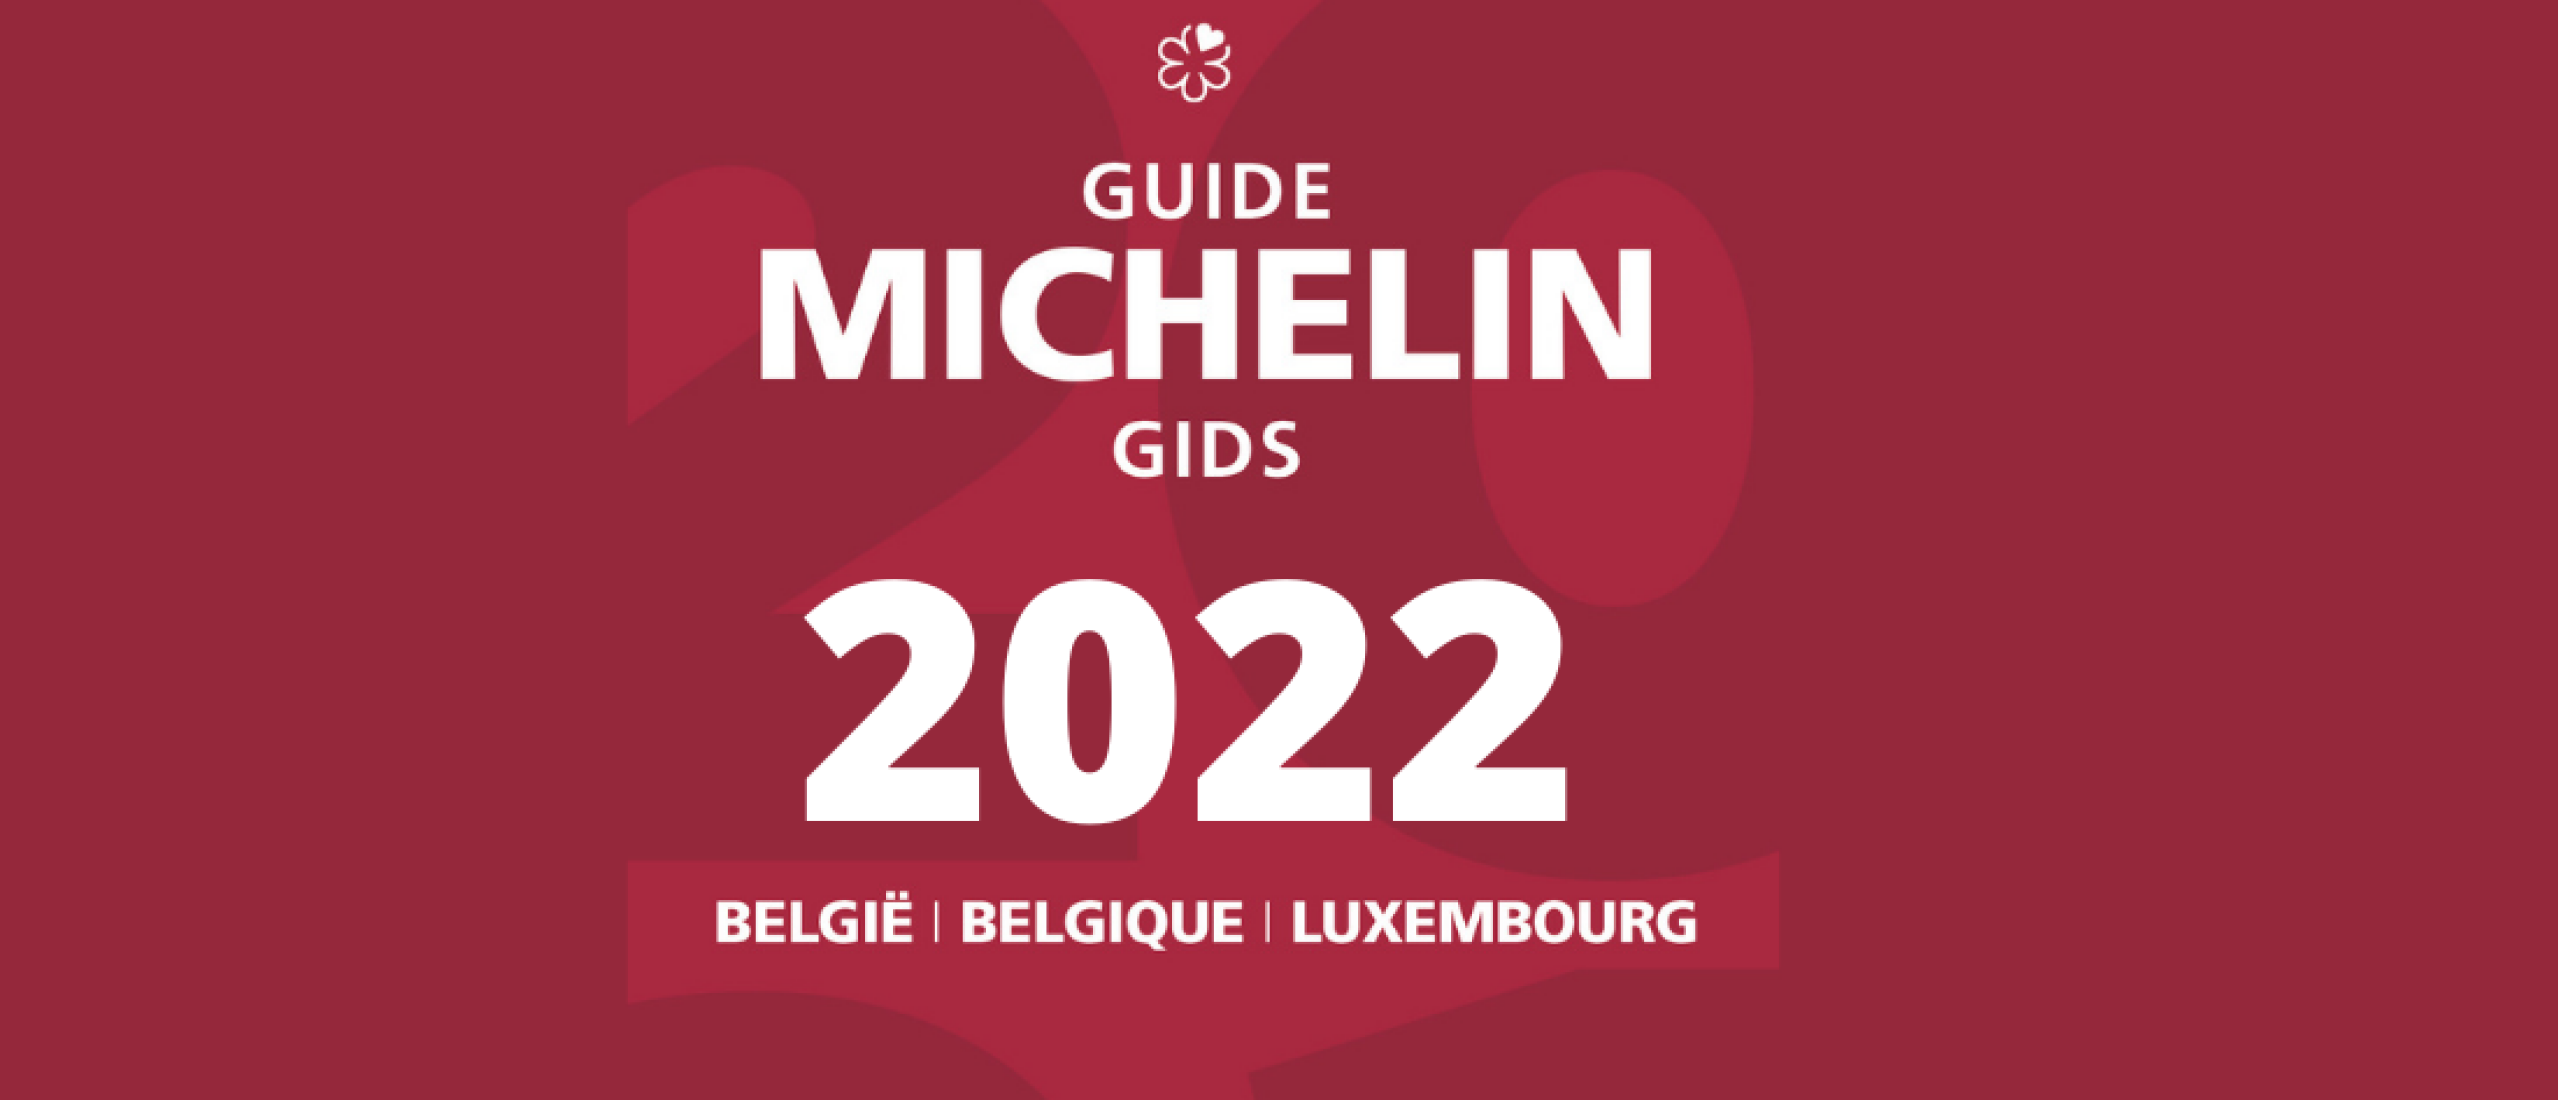 Nieuw Michelin driesterrenrestaurant voor België.